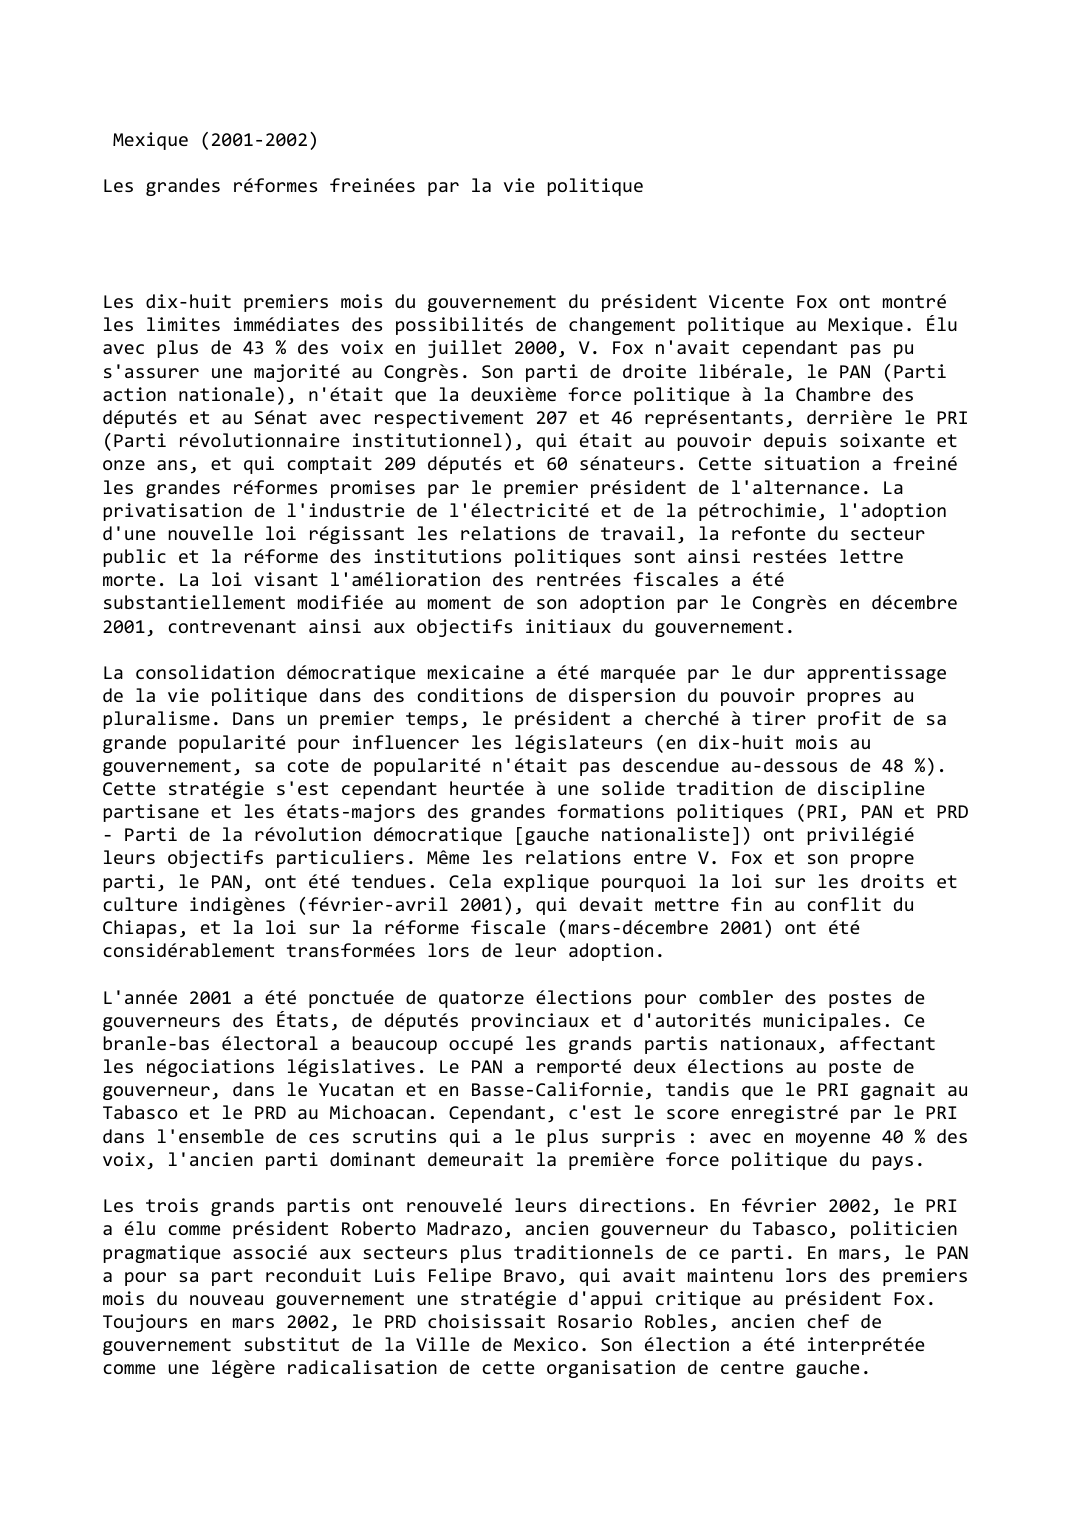 Prévisualisation du document Mexique (2001-2002)

Les grandes réformes freinées par la vie politique